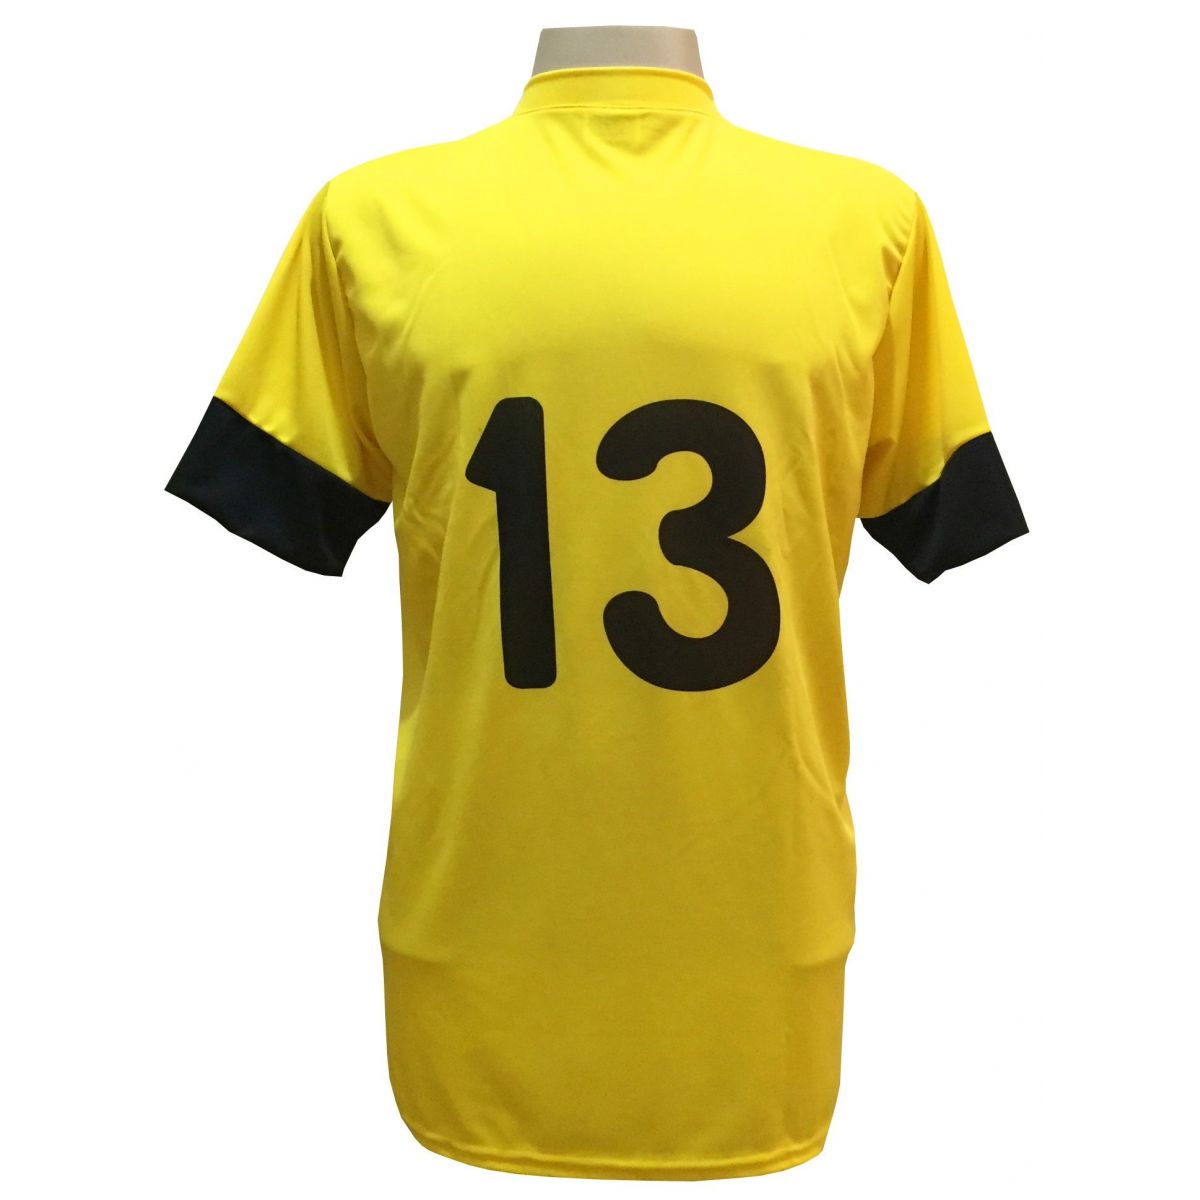 Uniforme Esportivo com 18 camisas modelo Columbus Amarelo/Preto + 18 calções modelo Madrid Preto + Brindes